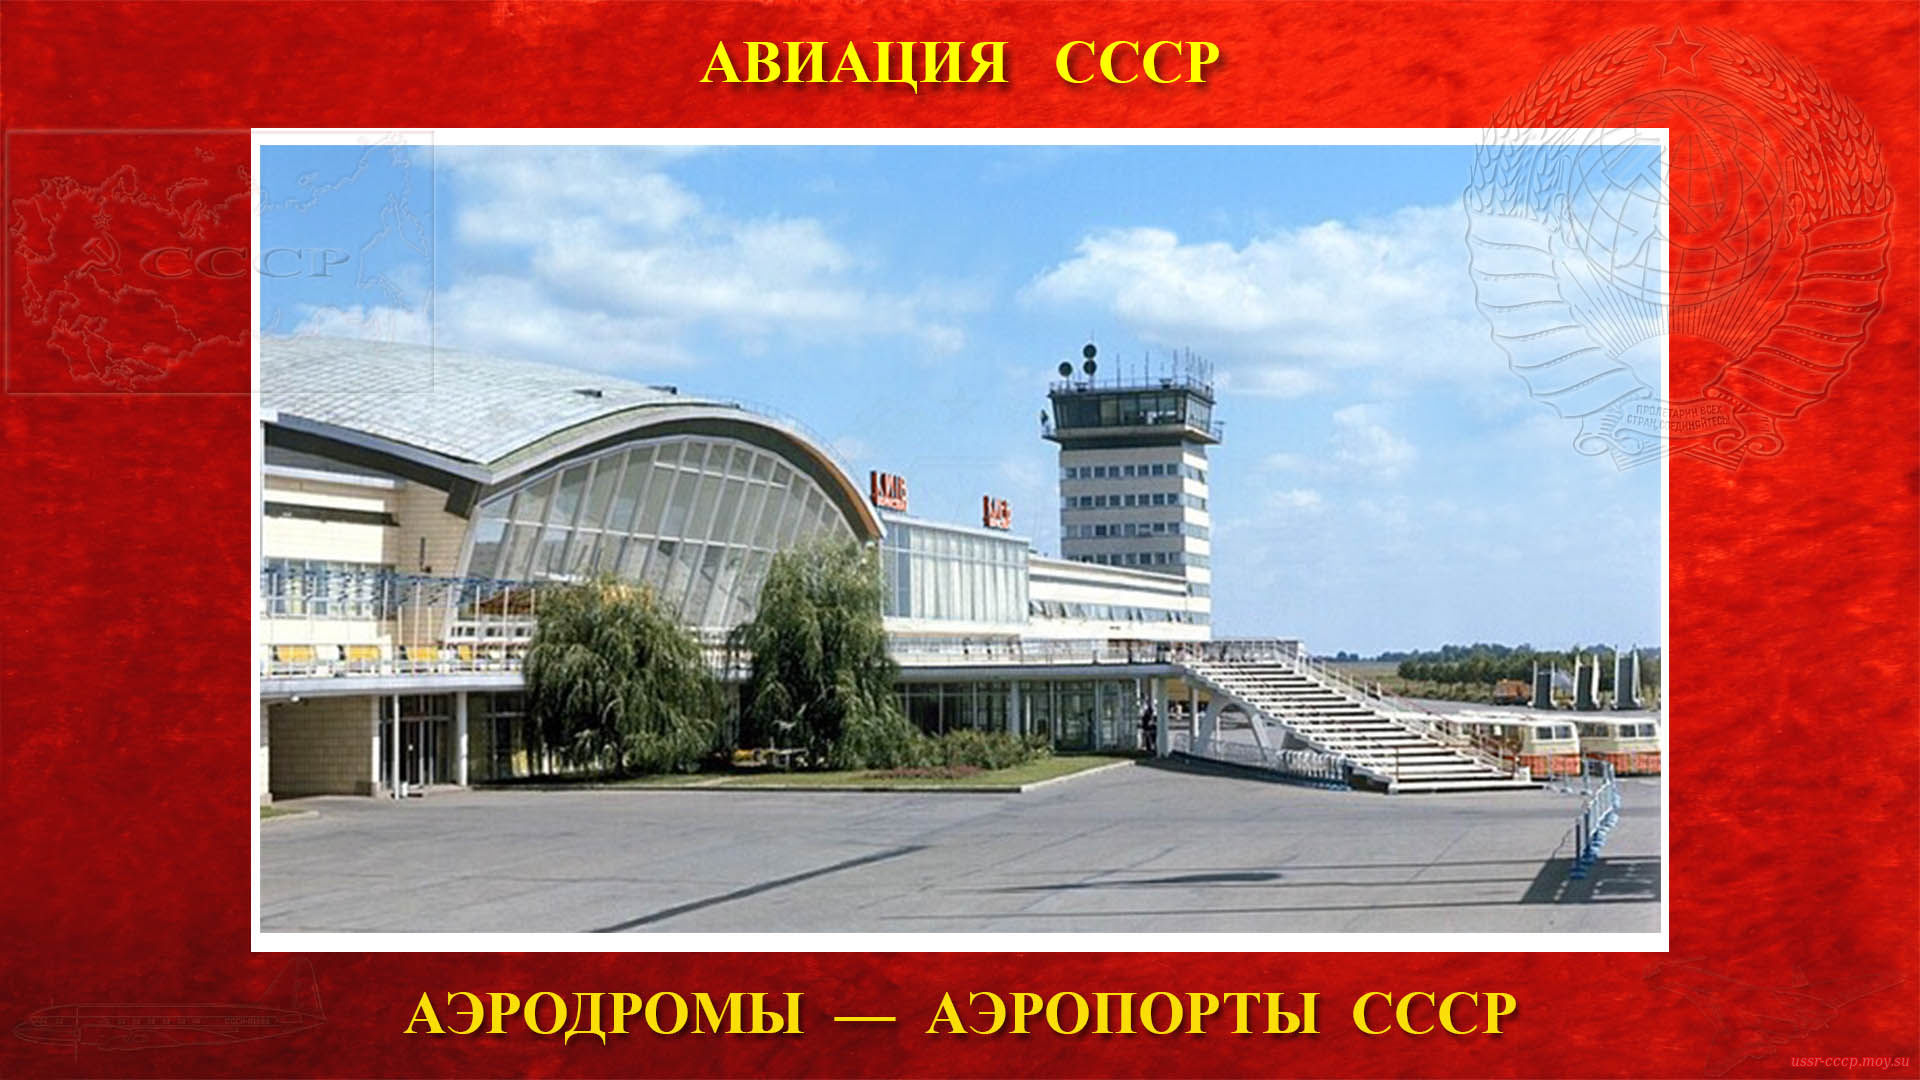 Аэропорт Борисполь — Аэропорт города Киева, столицы Украинской Советской Социалистической Республики (22.06.1959)